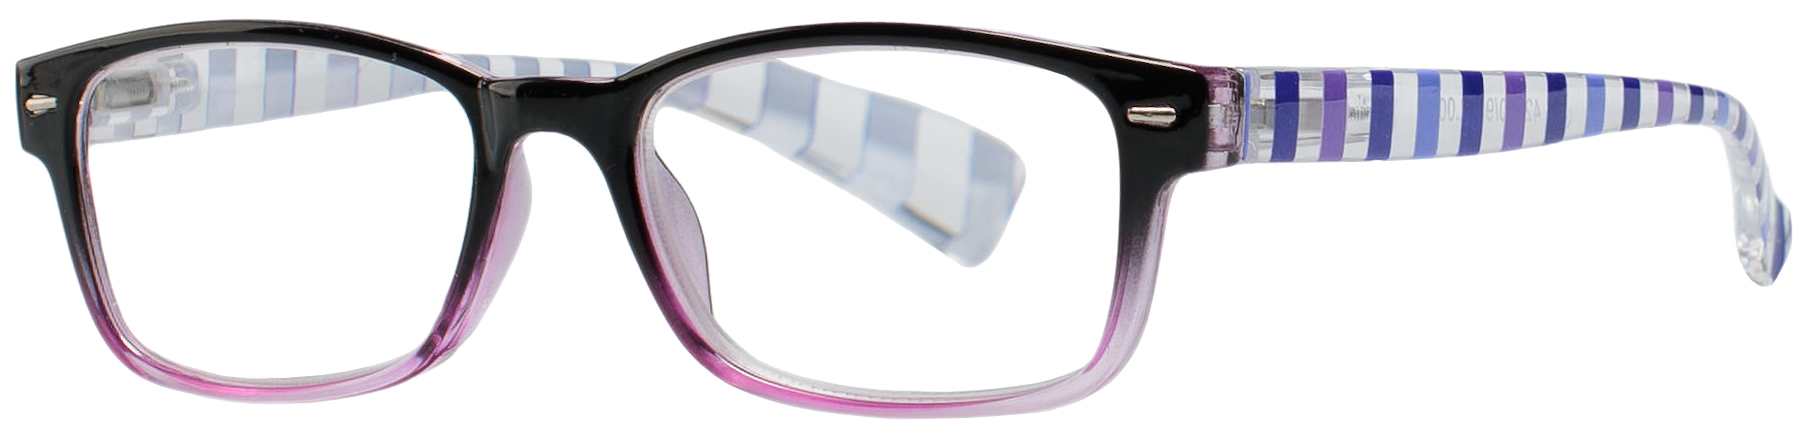 Очки корригирующие Кемнер Оптикс пластик для чтения +3, 5 градиент черн-фиолетовые 42640/12, Kemner Optics  - купить со скидкой